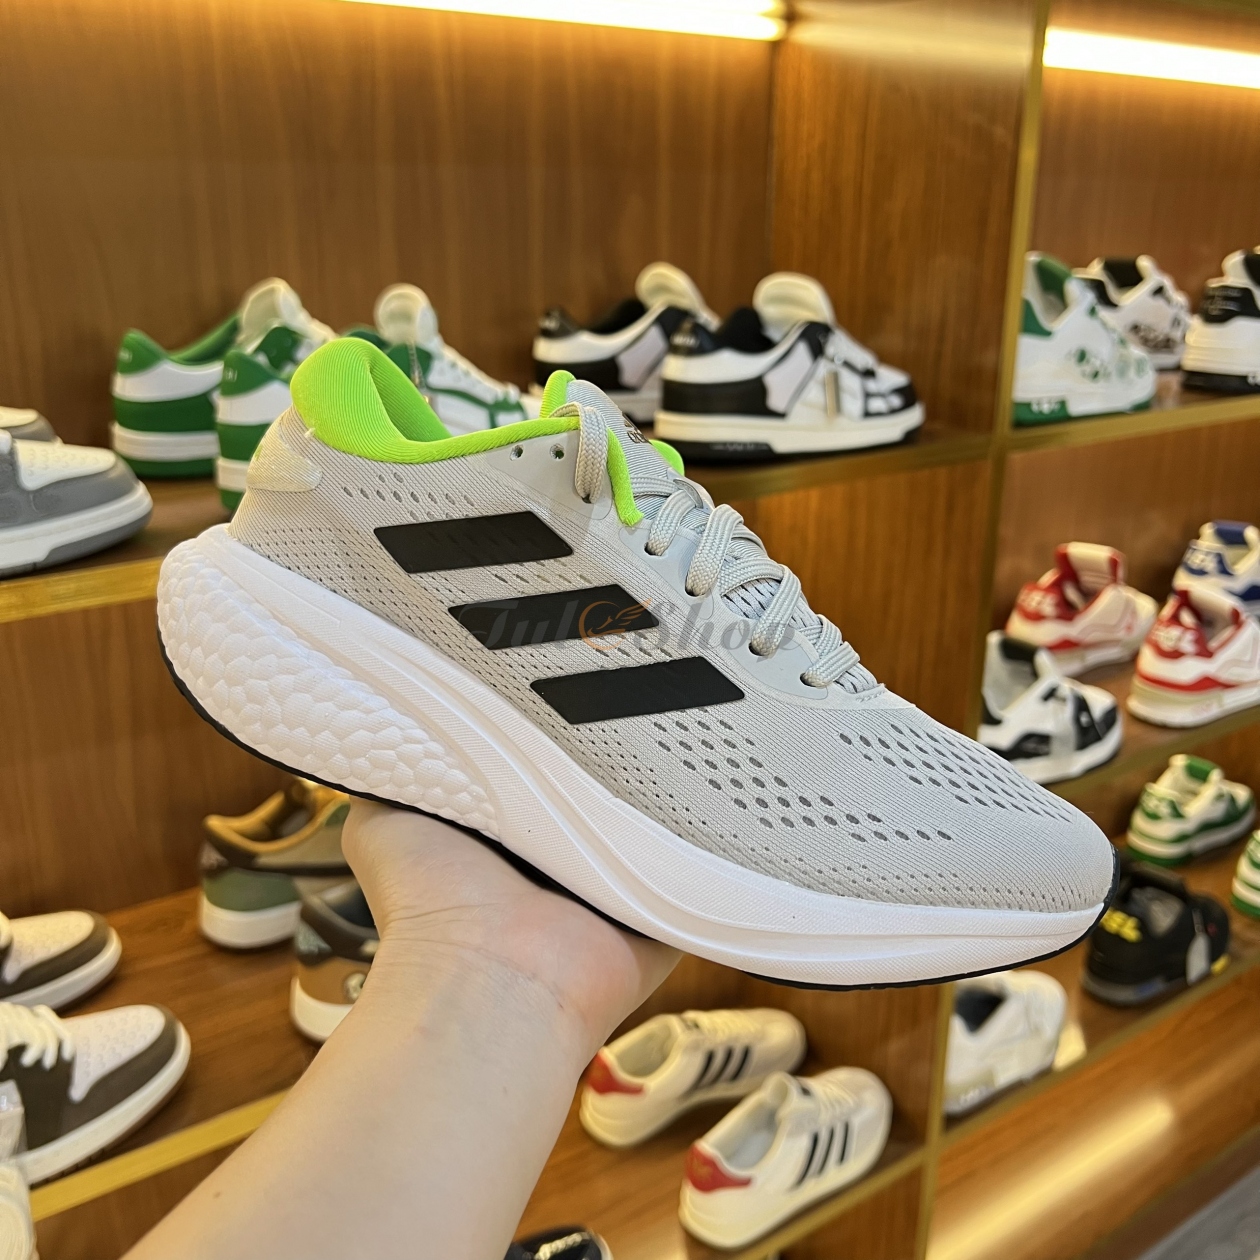 Adidas cho trình làng mẫu giày Supernova đẳng cấp mới